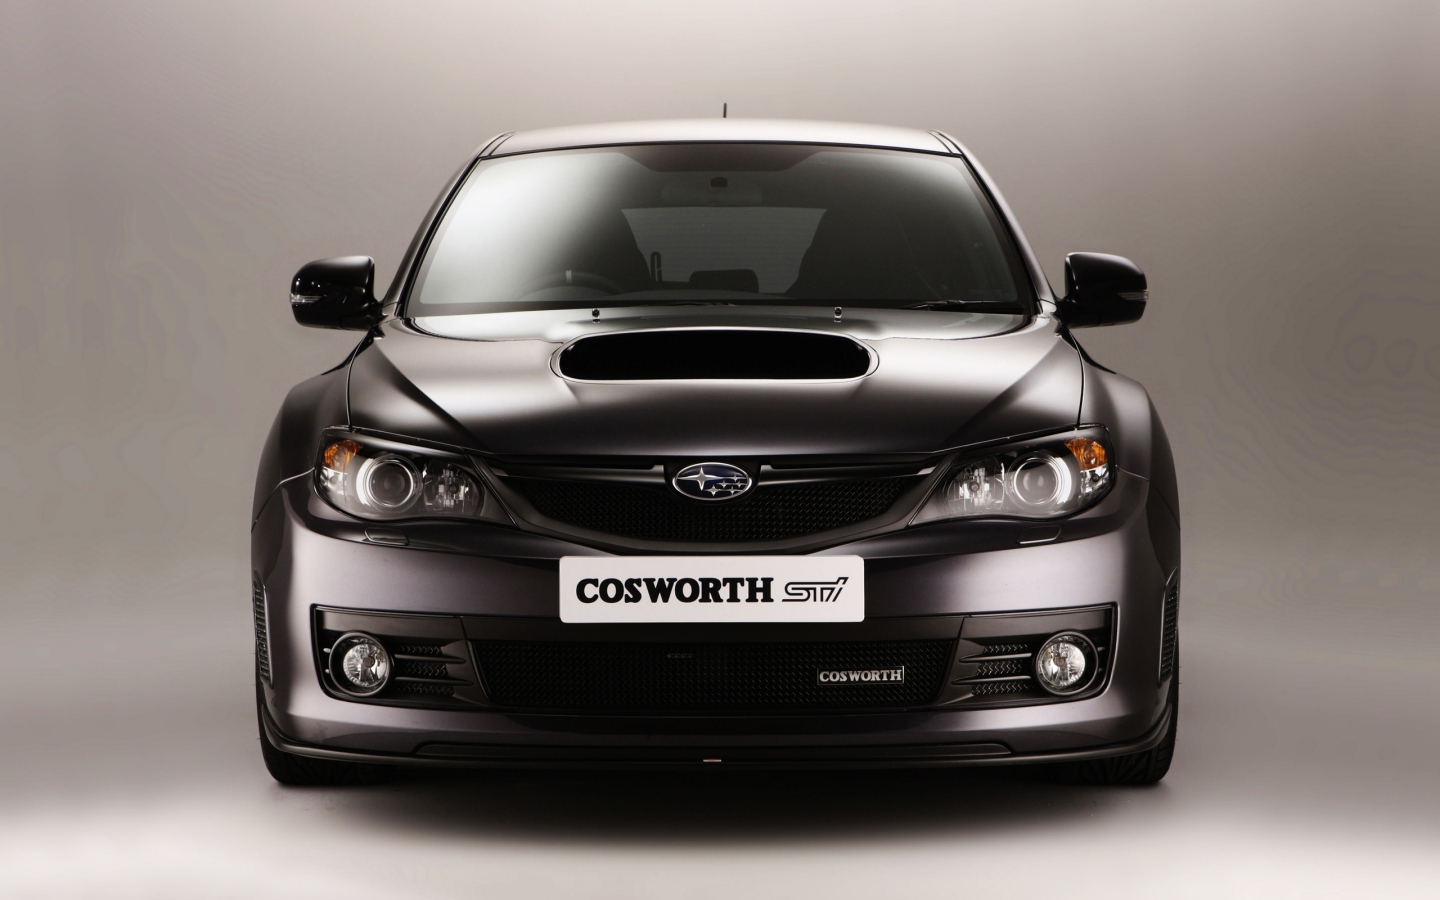 Subaru Cosworth Impreza for 1440 x 900 widescreen resolution